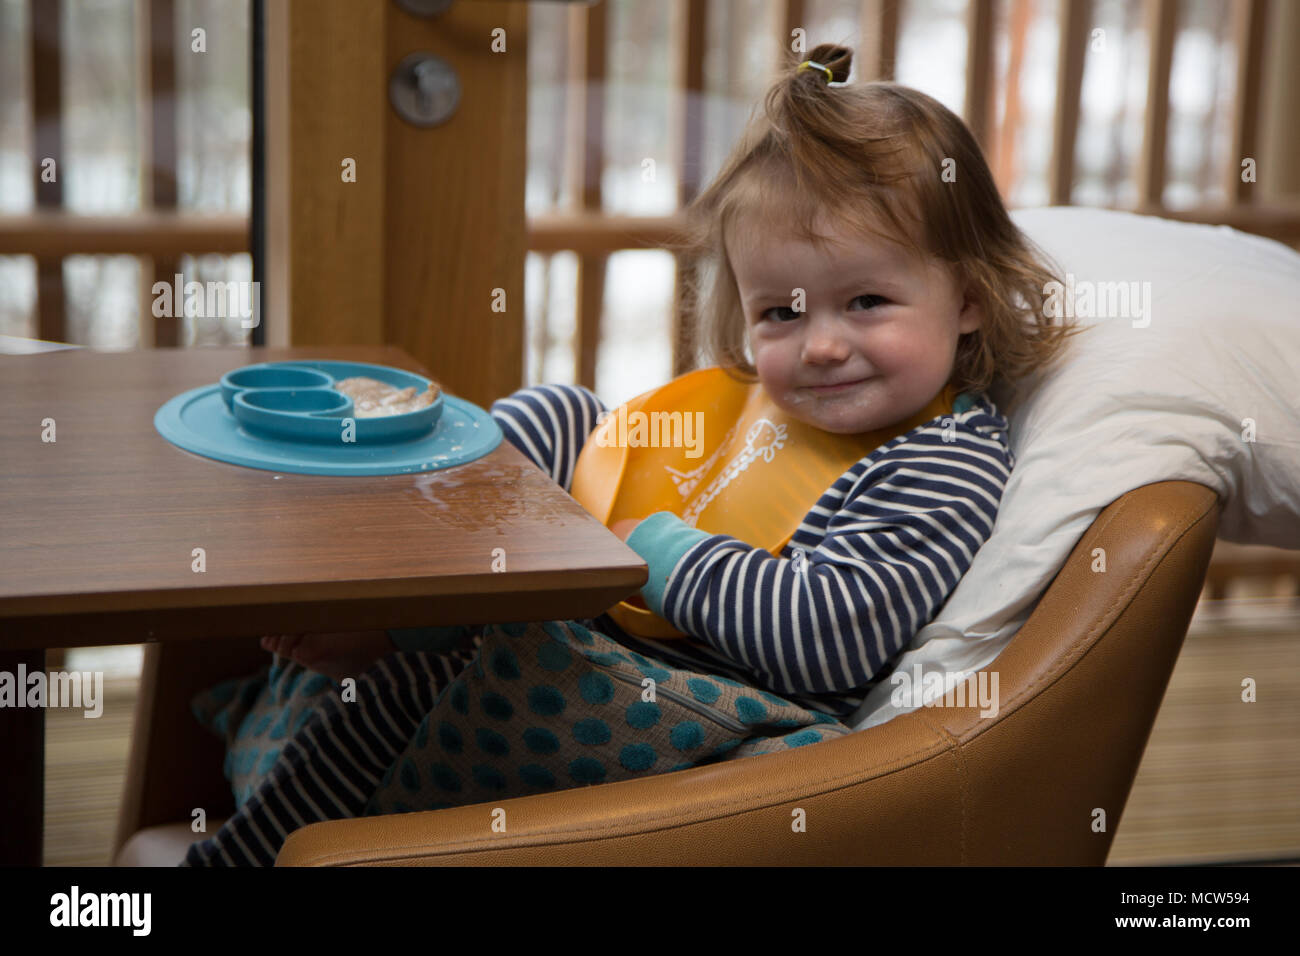 Toddler eating breakfast Stock Photo